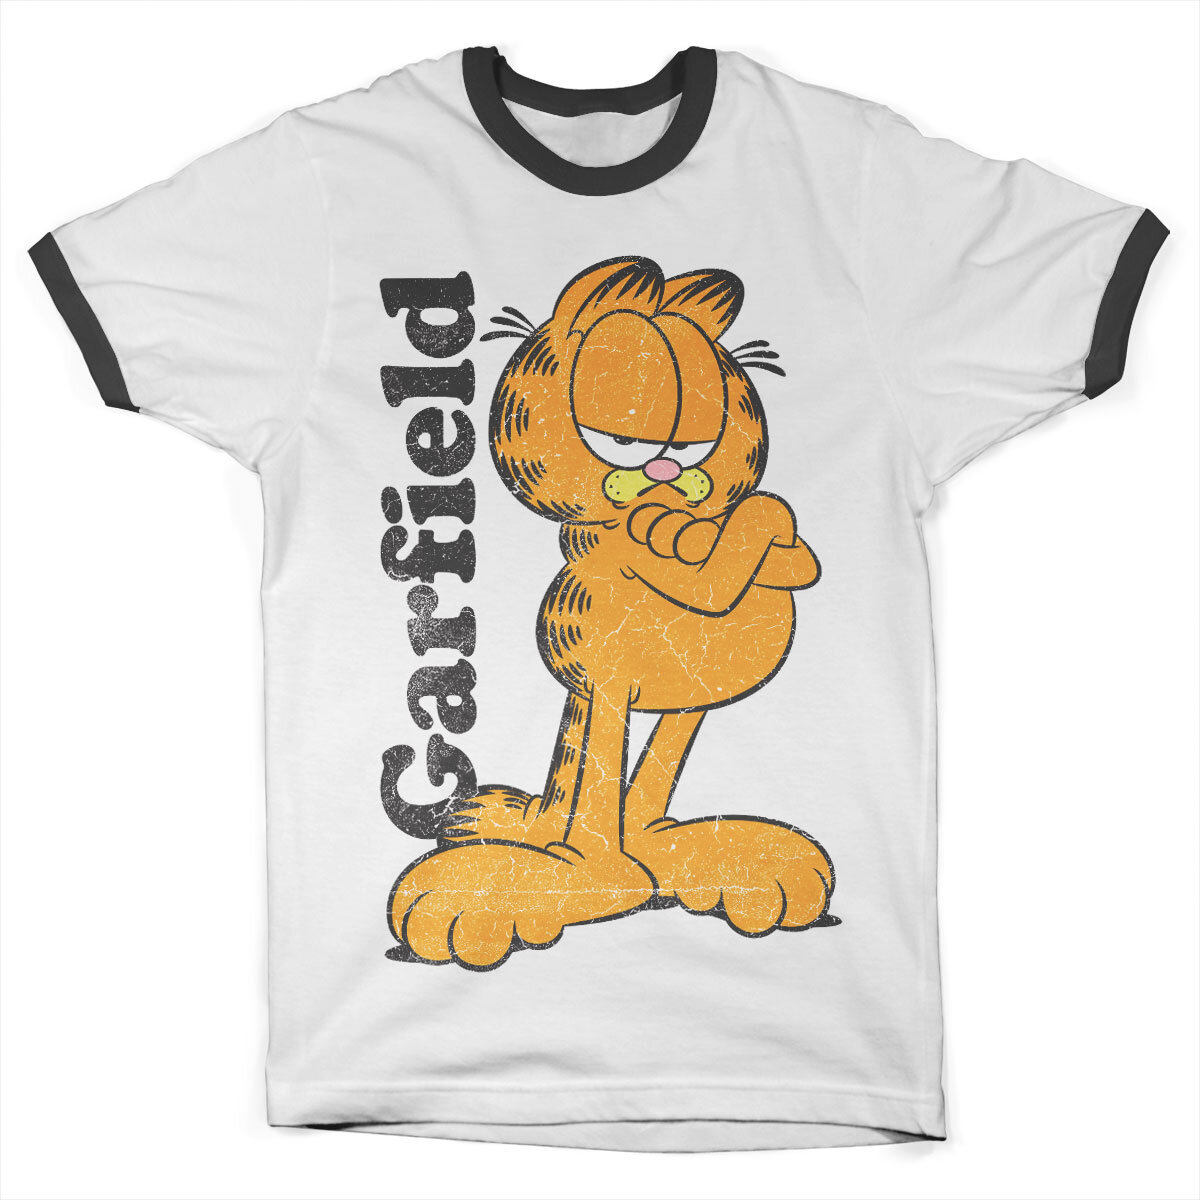 Garfield Ringer Tee